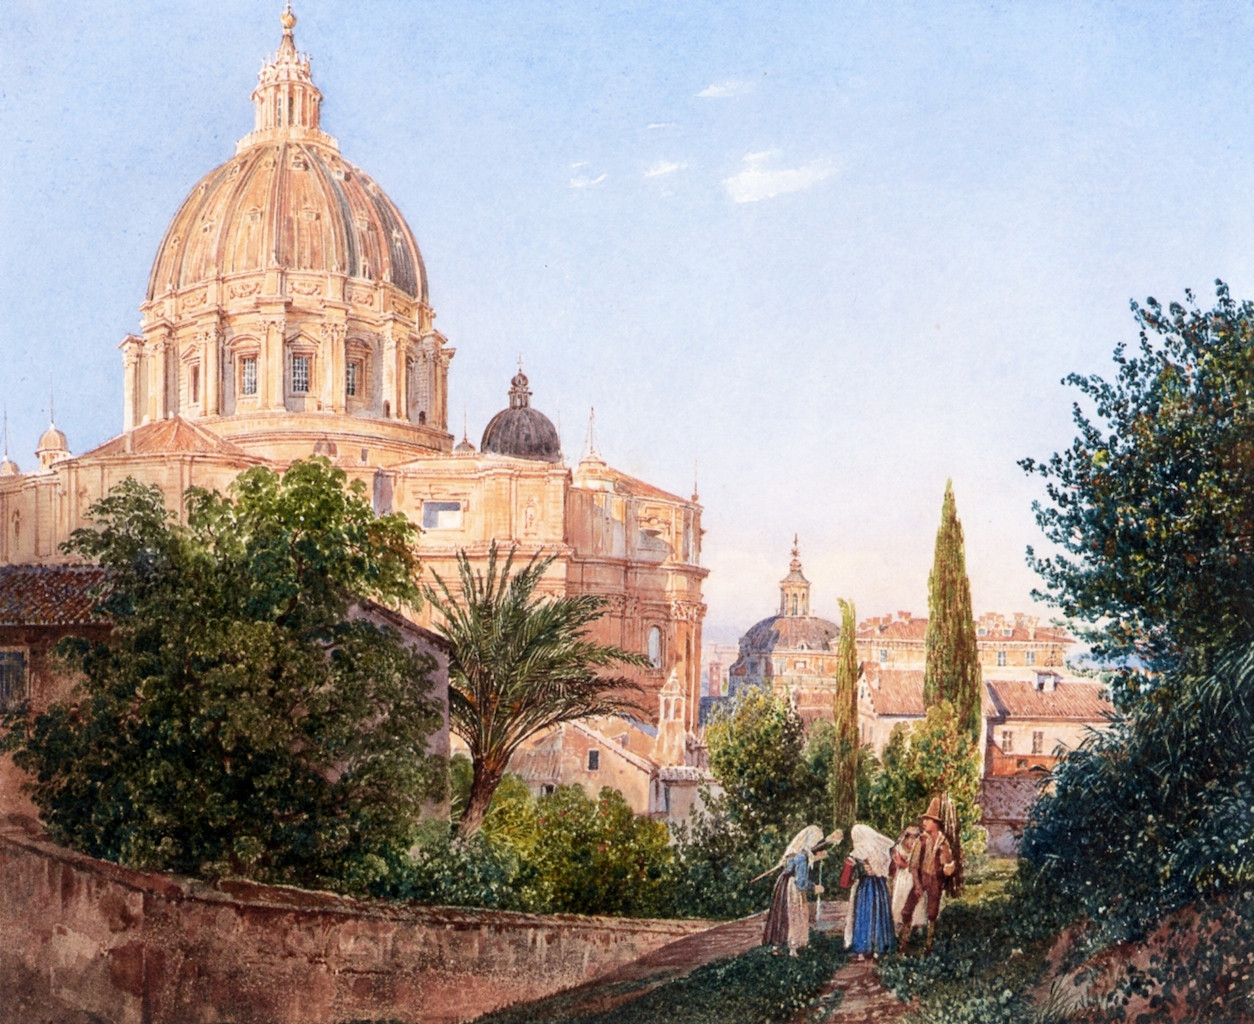 St. Peter's from the Vatican Garden by Rudolf von Alt, 1838